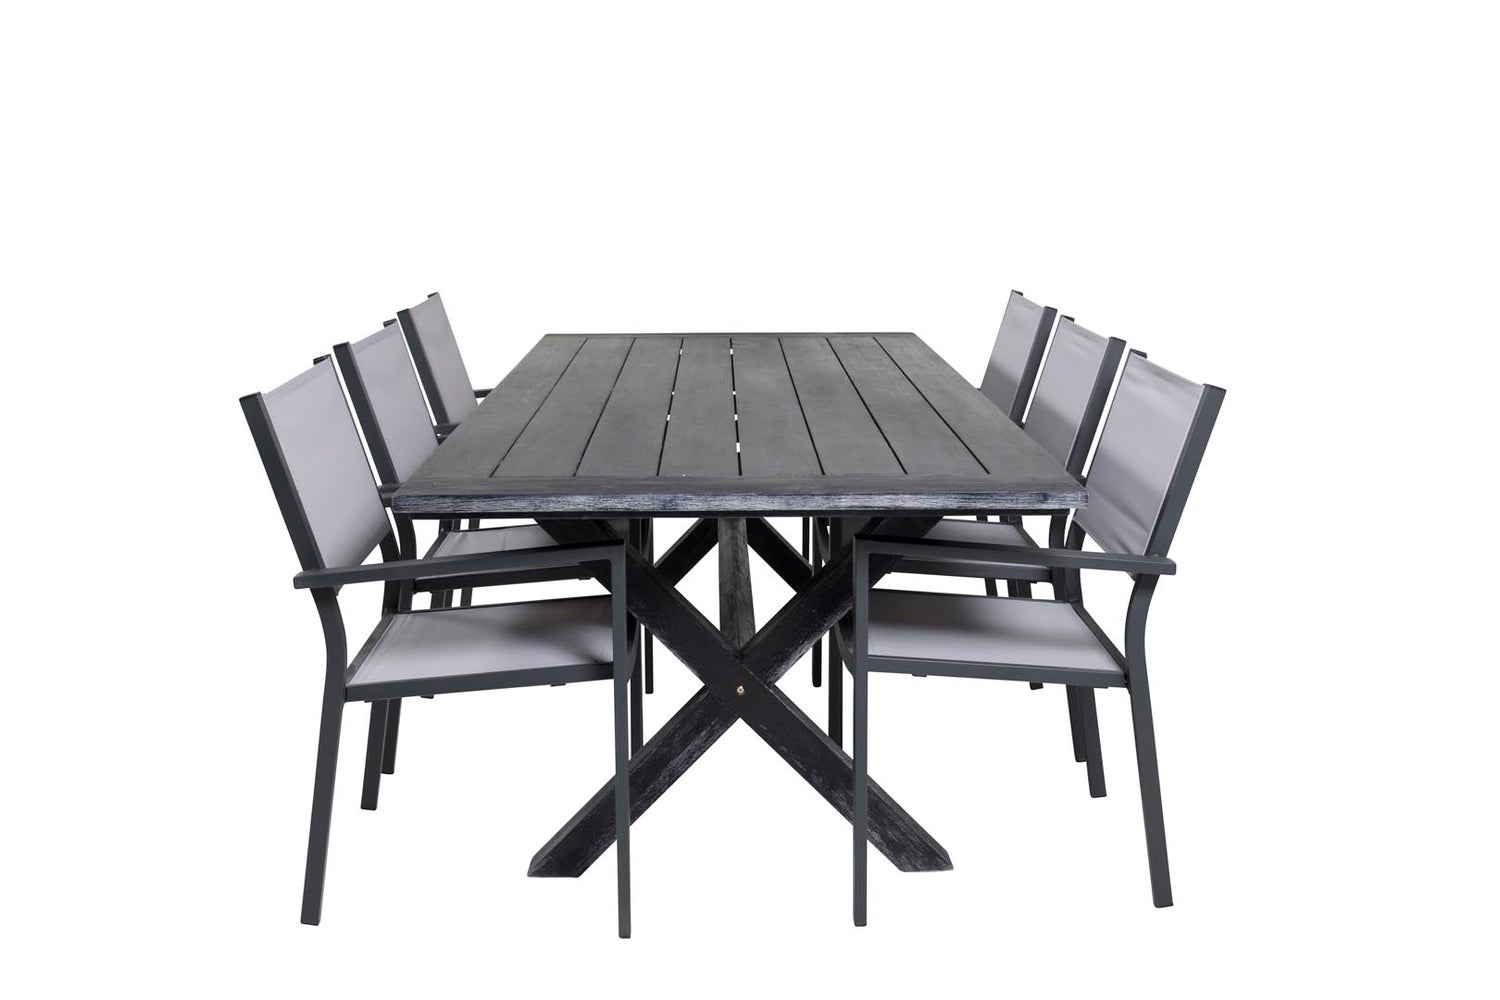 Rives Gartenset Tisch 200x100cm, 6 Stühle Copacabana, schwarz,grau.